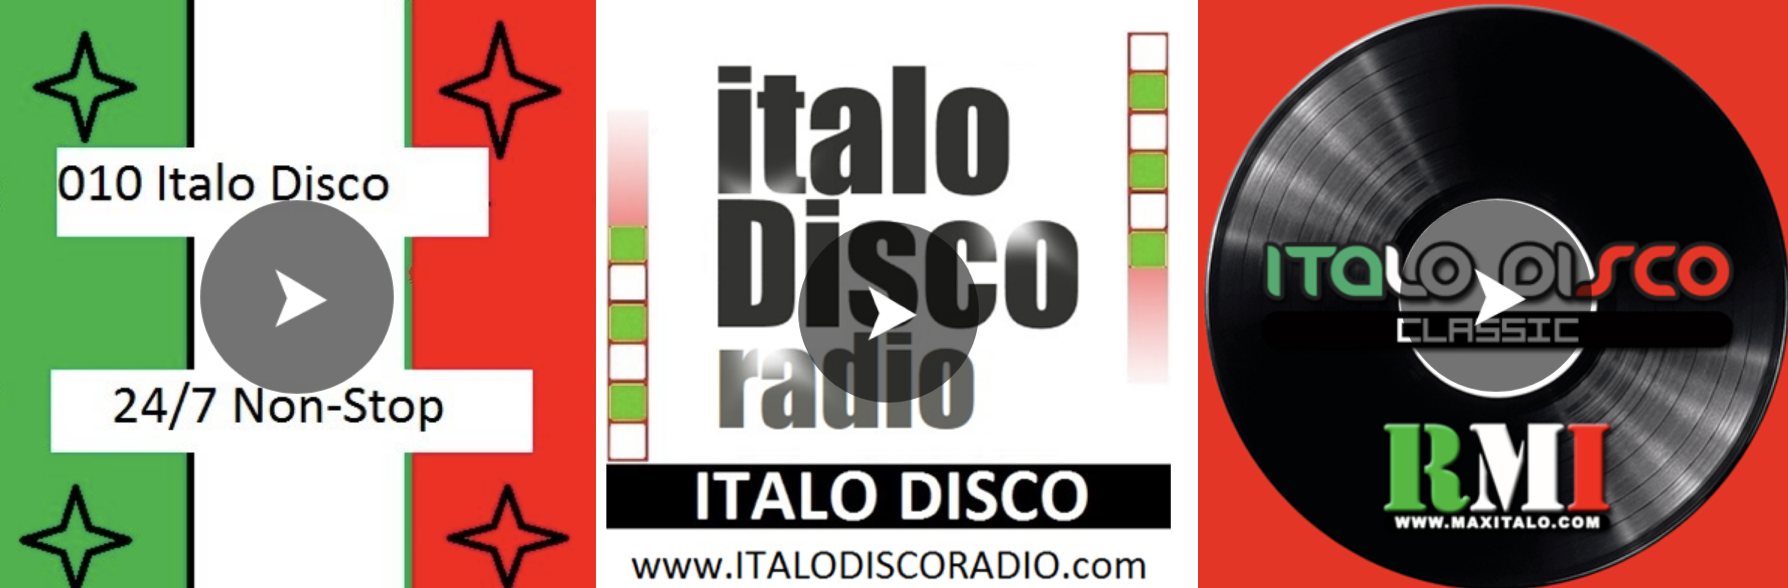 Le retour de l'Italo Disco sur plusieurs webradios